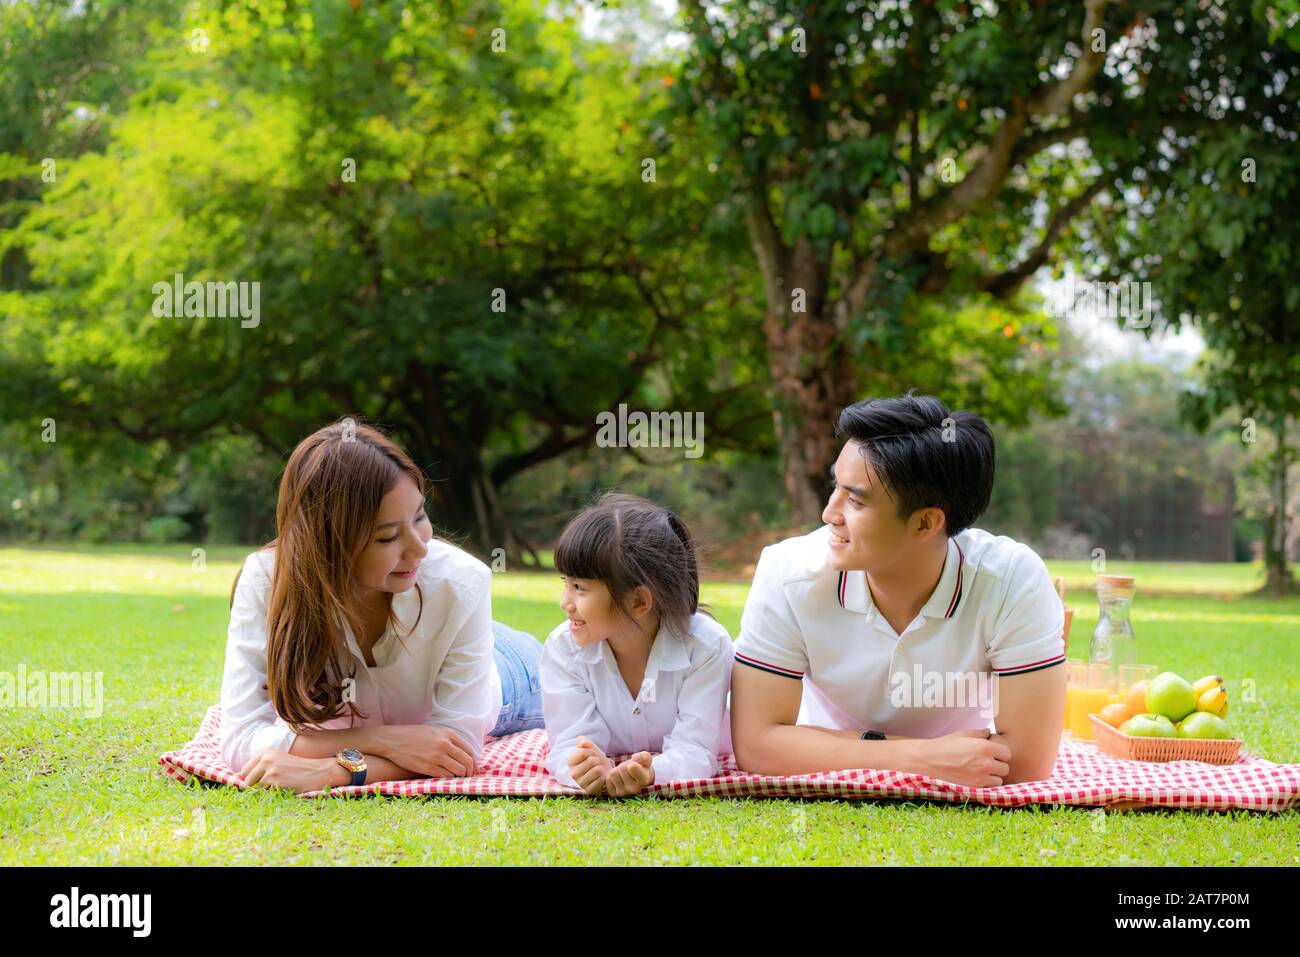 Asiatische Teenager Familie fröhlicher Urlaub Picknick-Moment im Park mit Vater, Mutter und Tochter liegen auf Matte und lächeln zu fröhlichen Urlaubszeiten zusammen Stockfoto